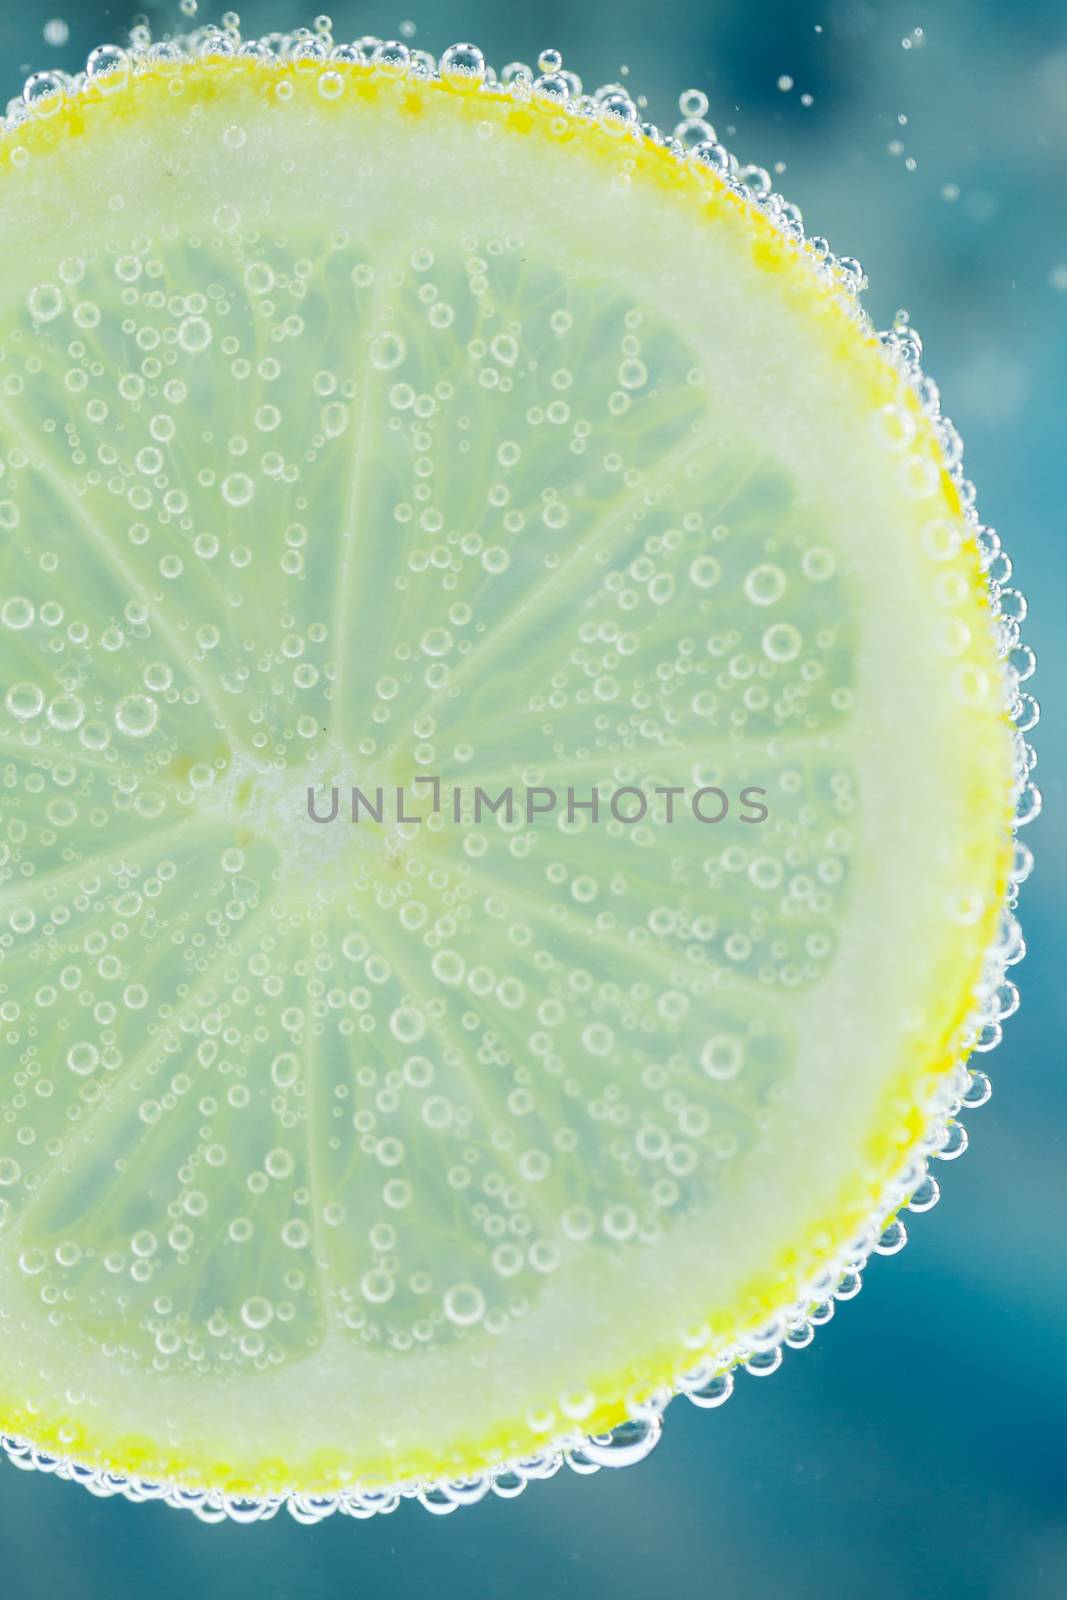 Lemon in carbonated water by juniart